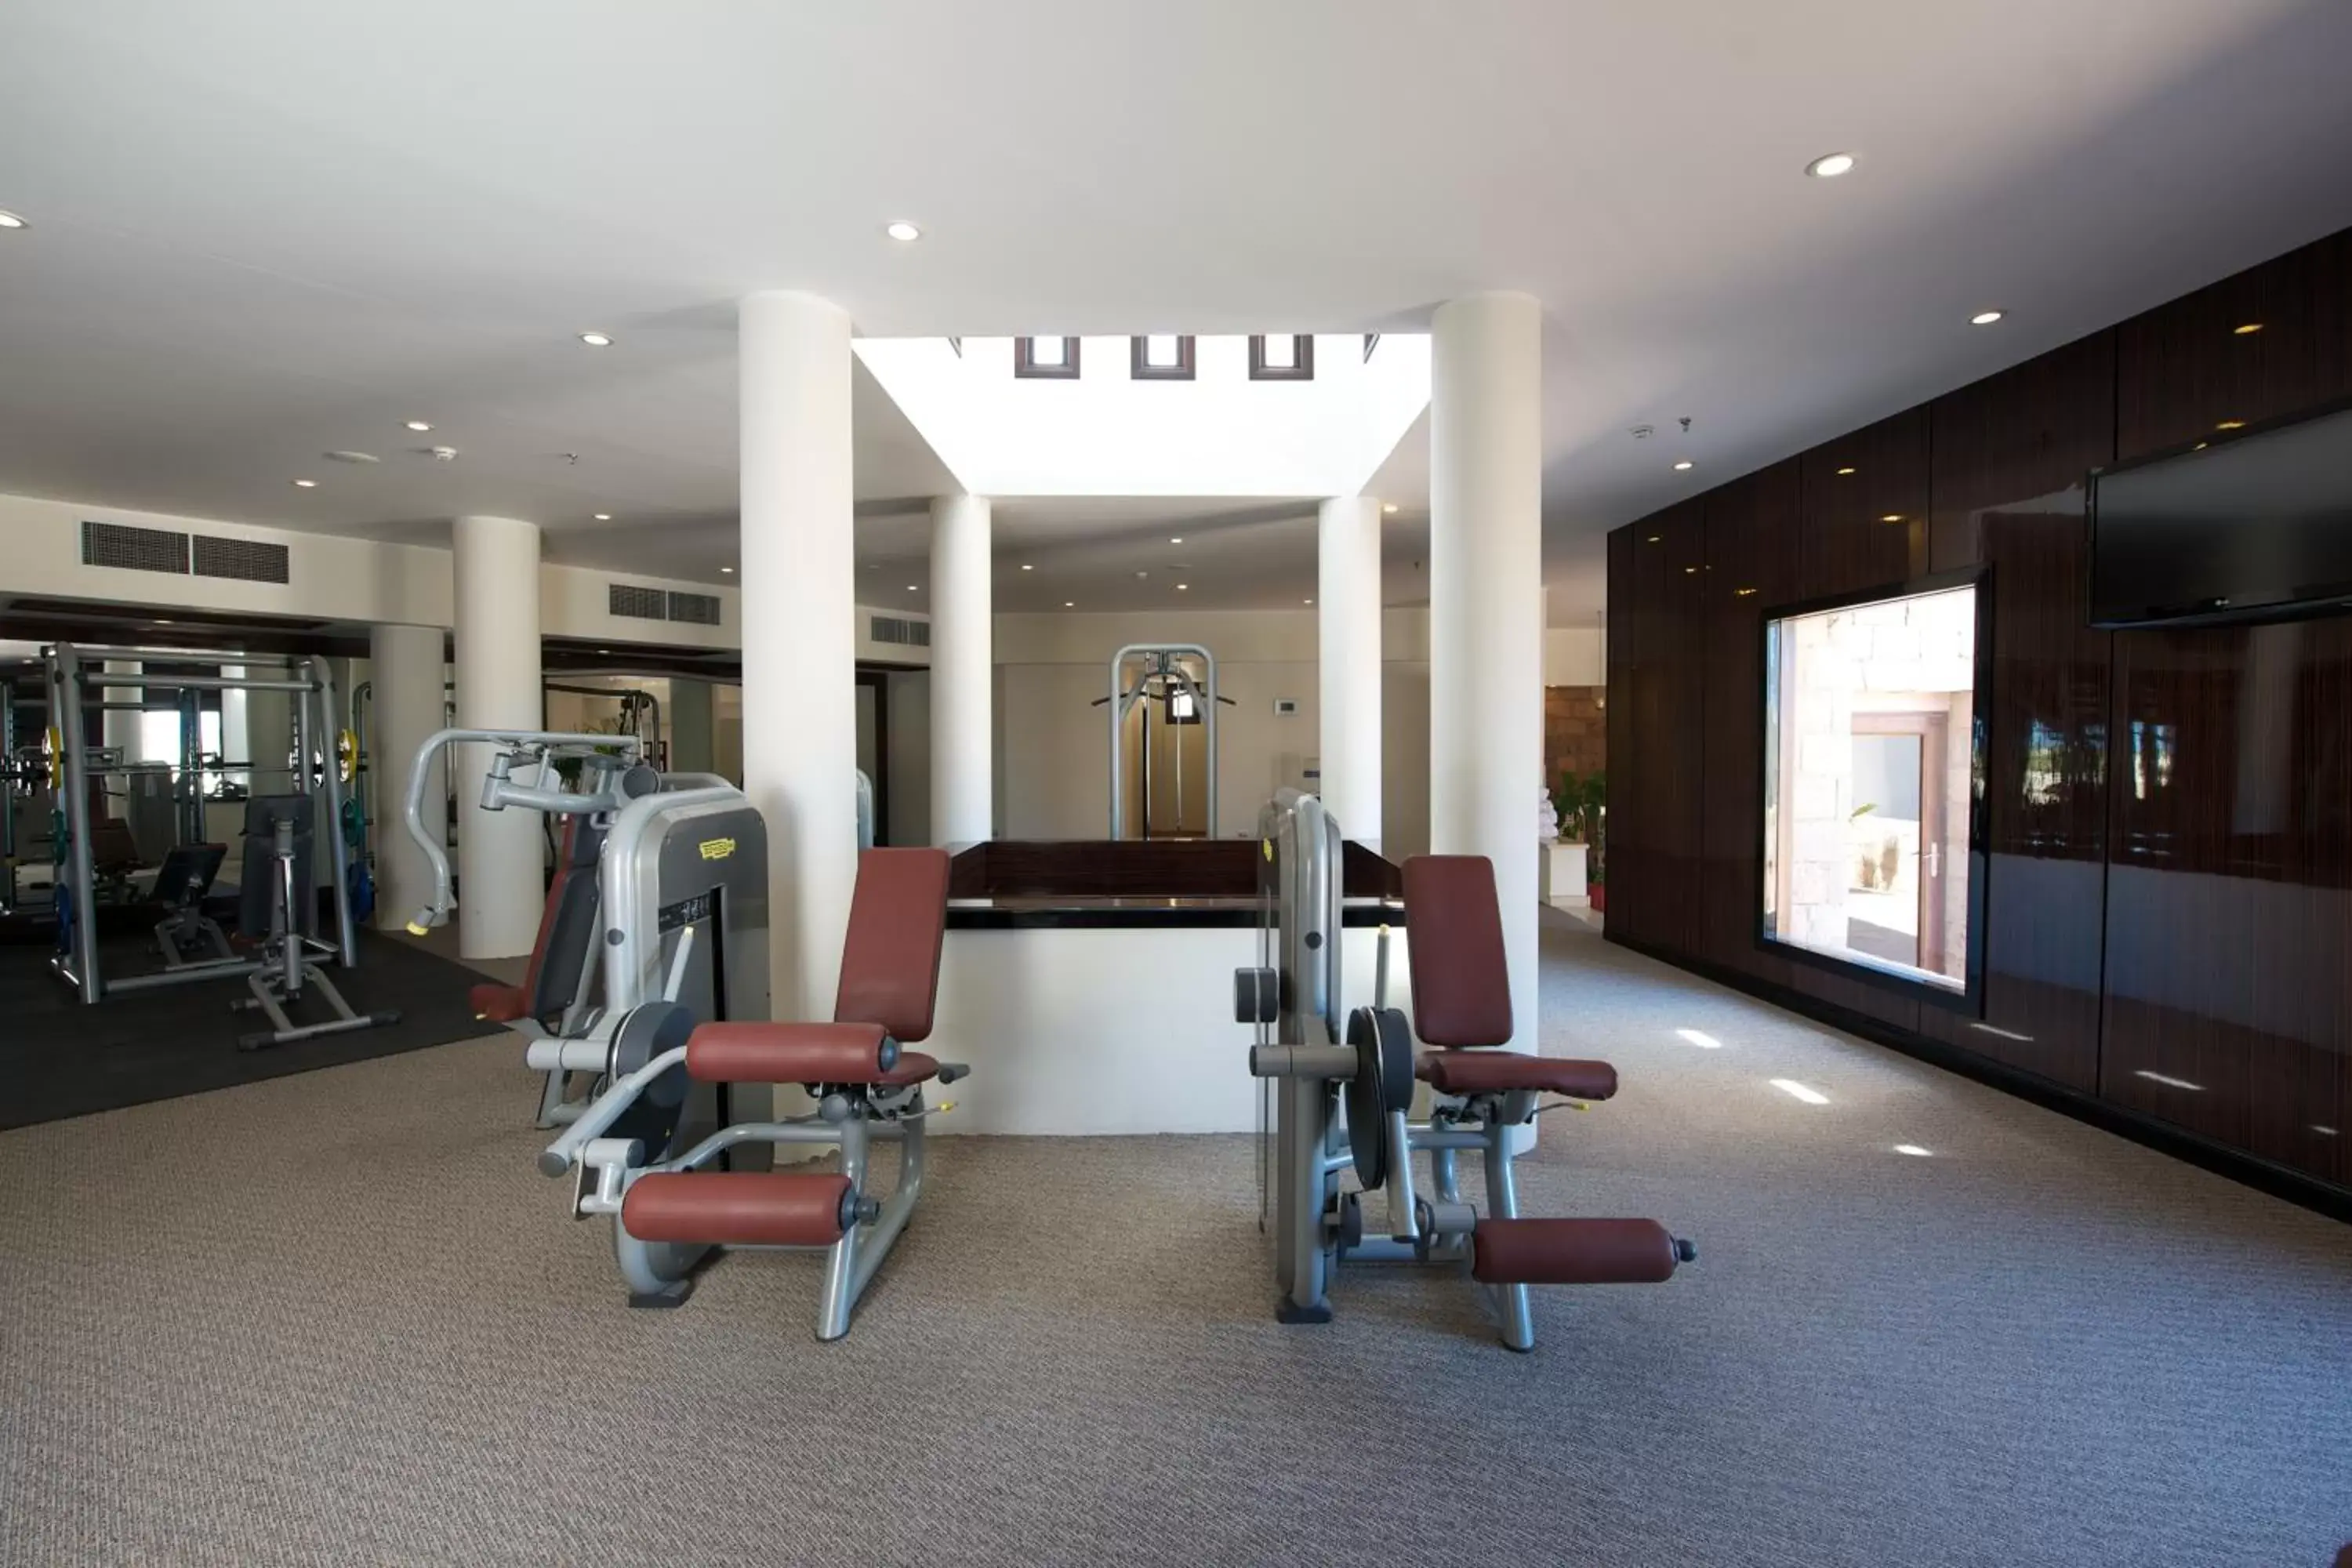 Fitness centre/facilities, Fitness Center/Facilities in Fort Arabesque Resort, Spa & Villas